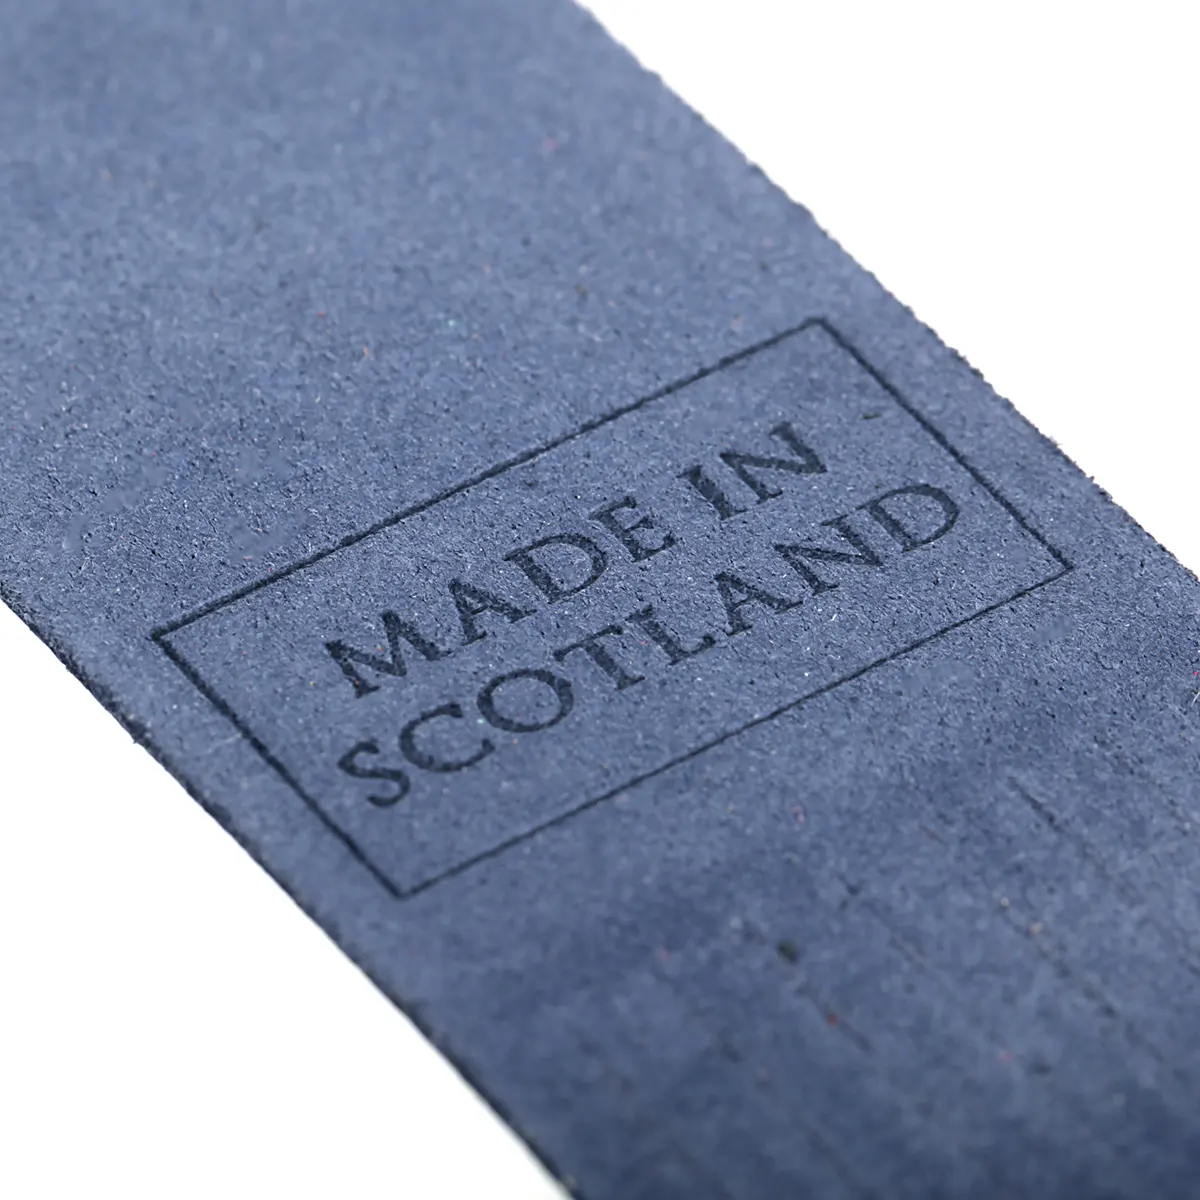 Iona - Lesezeichen aus Leder in Blau - Made in Scotland